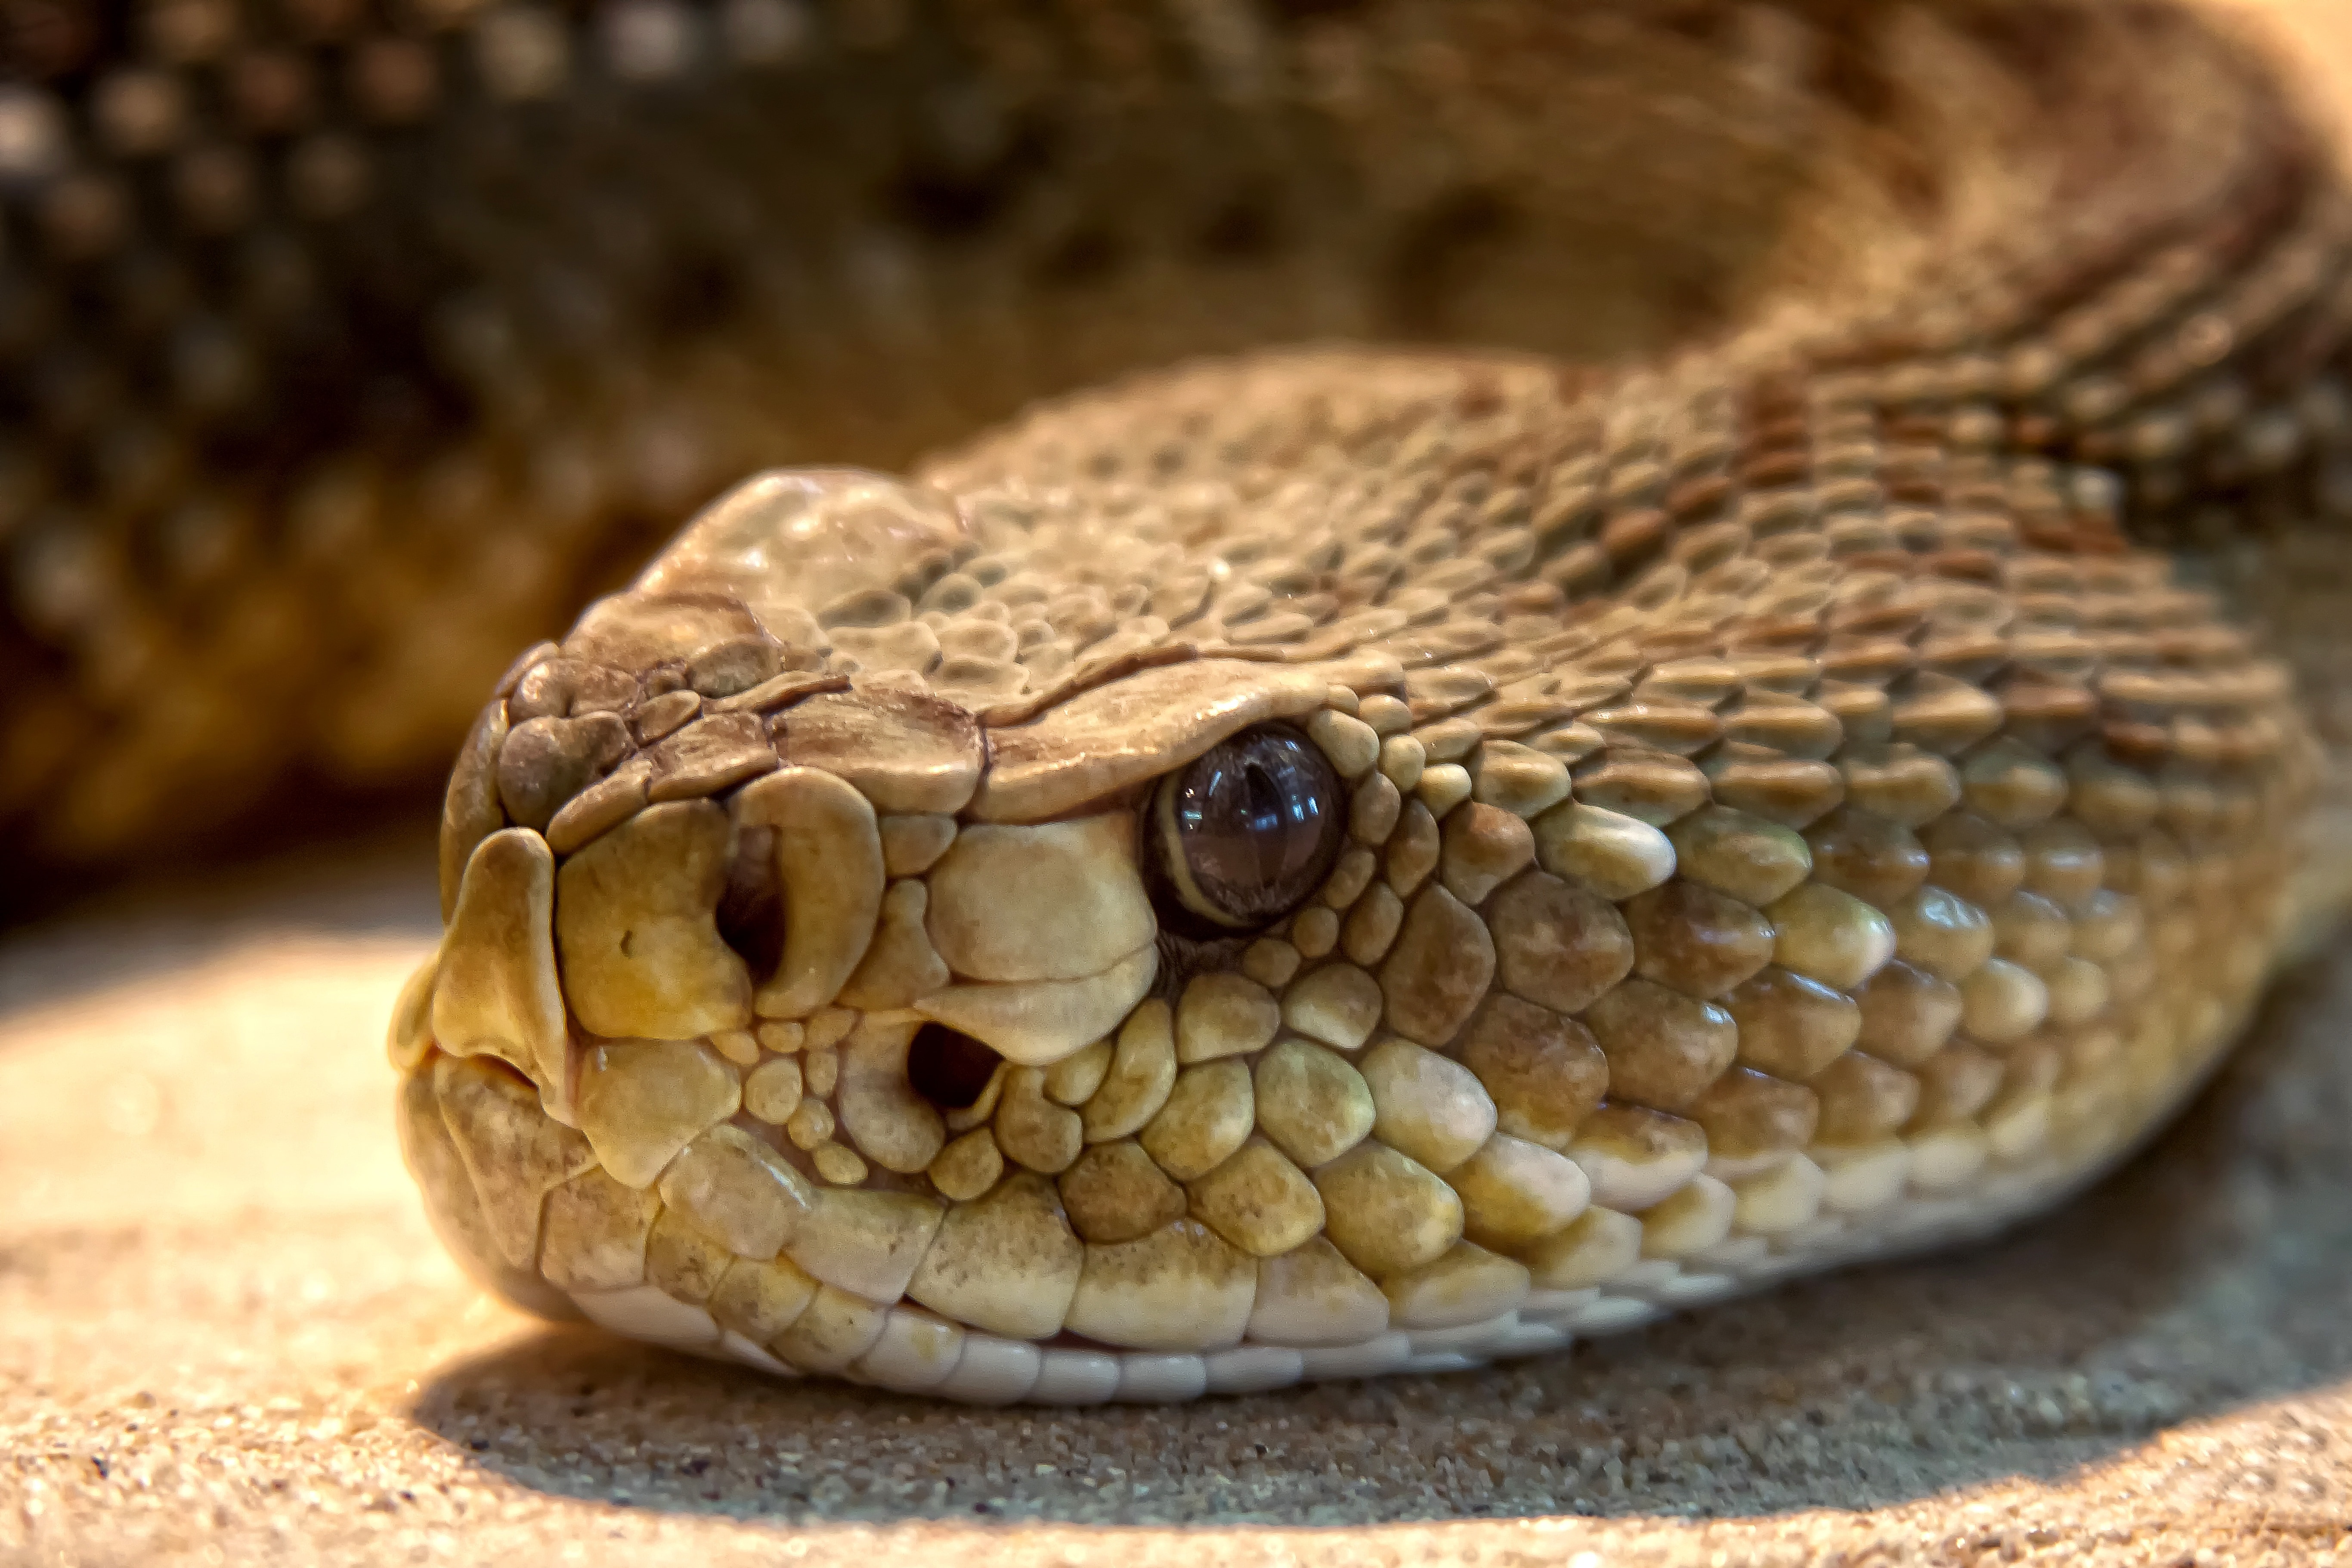 Brown Snake - Texas Rattlesnake , HD Wallpaper & Backgrounds